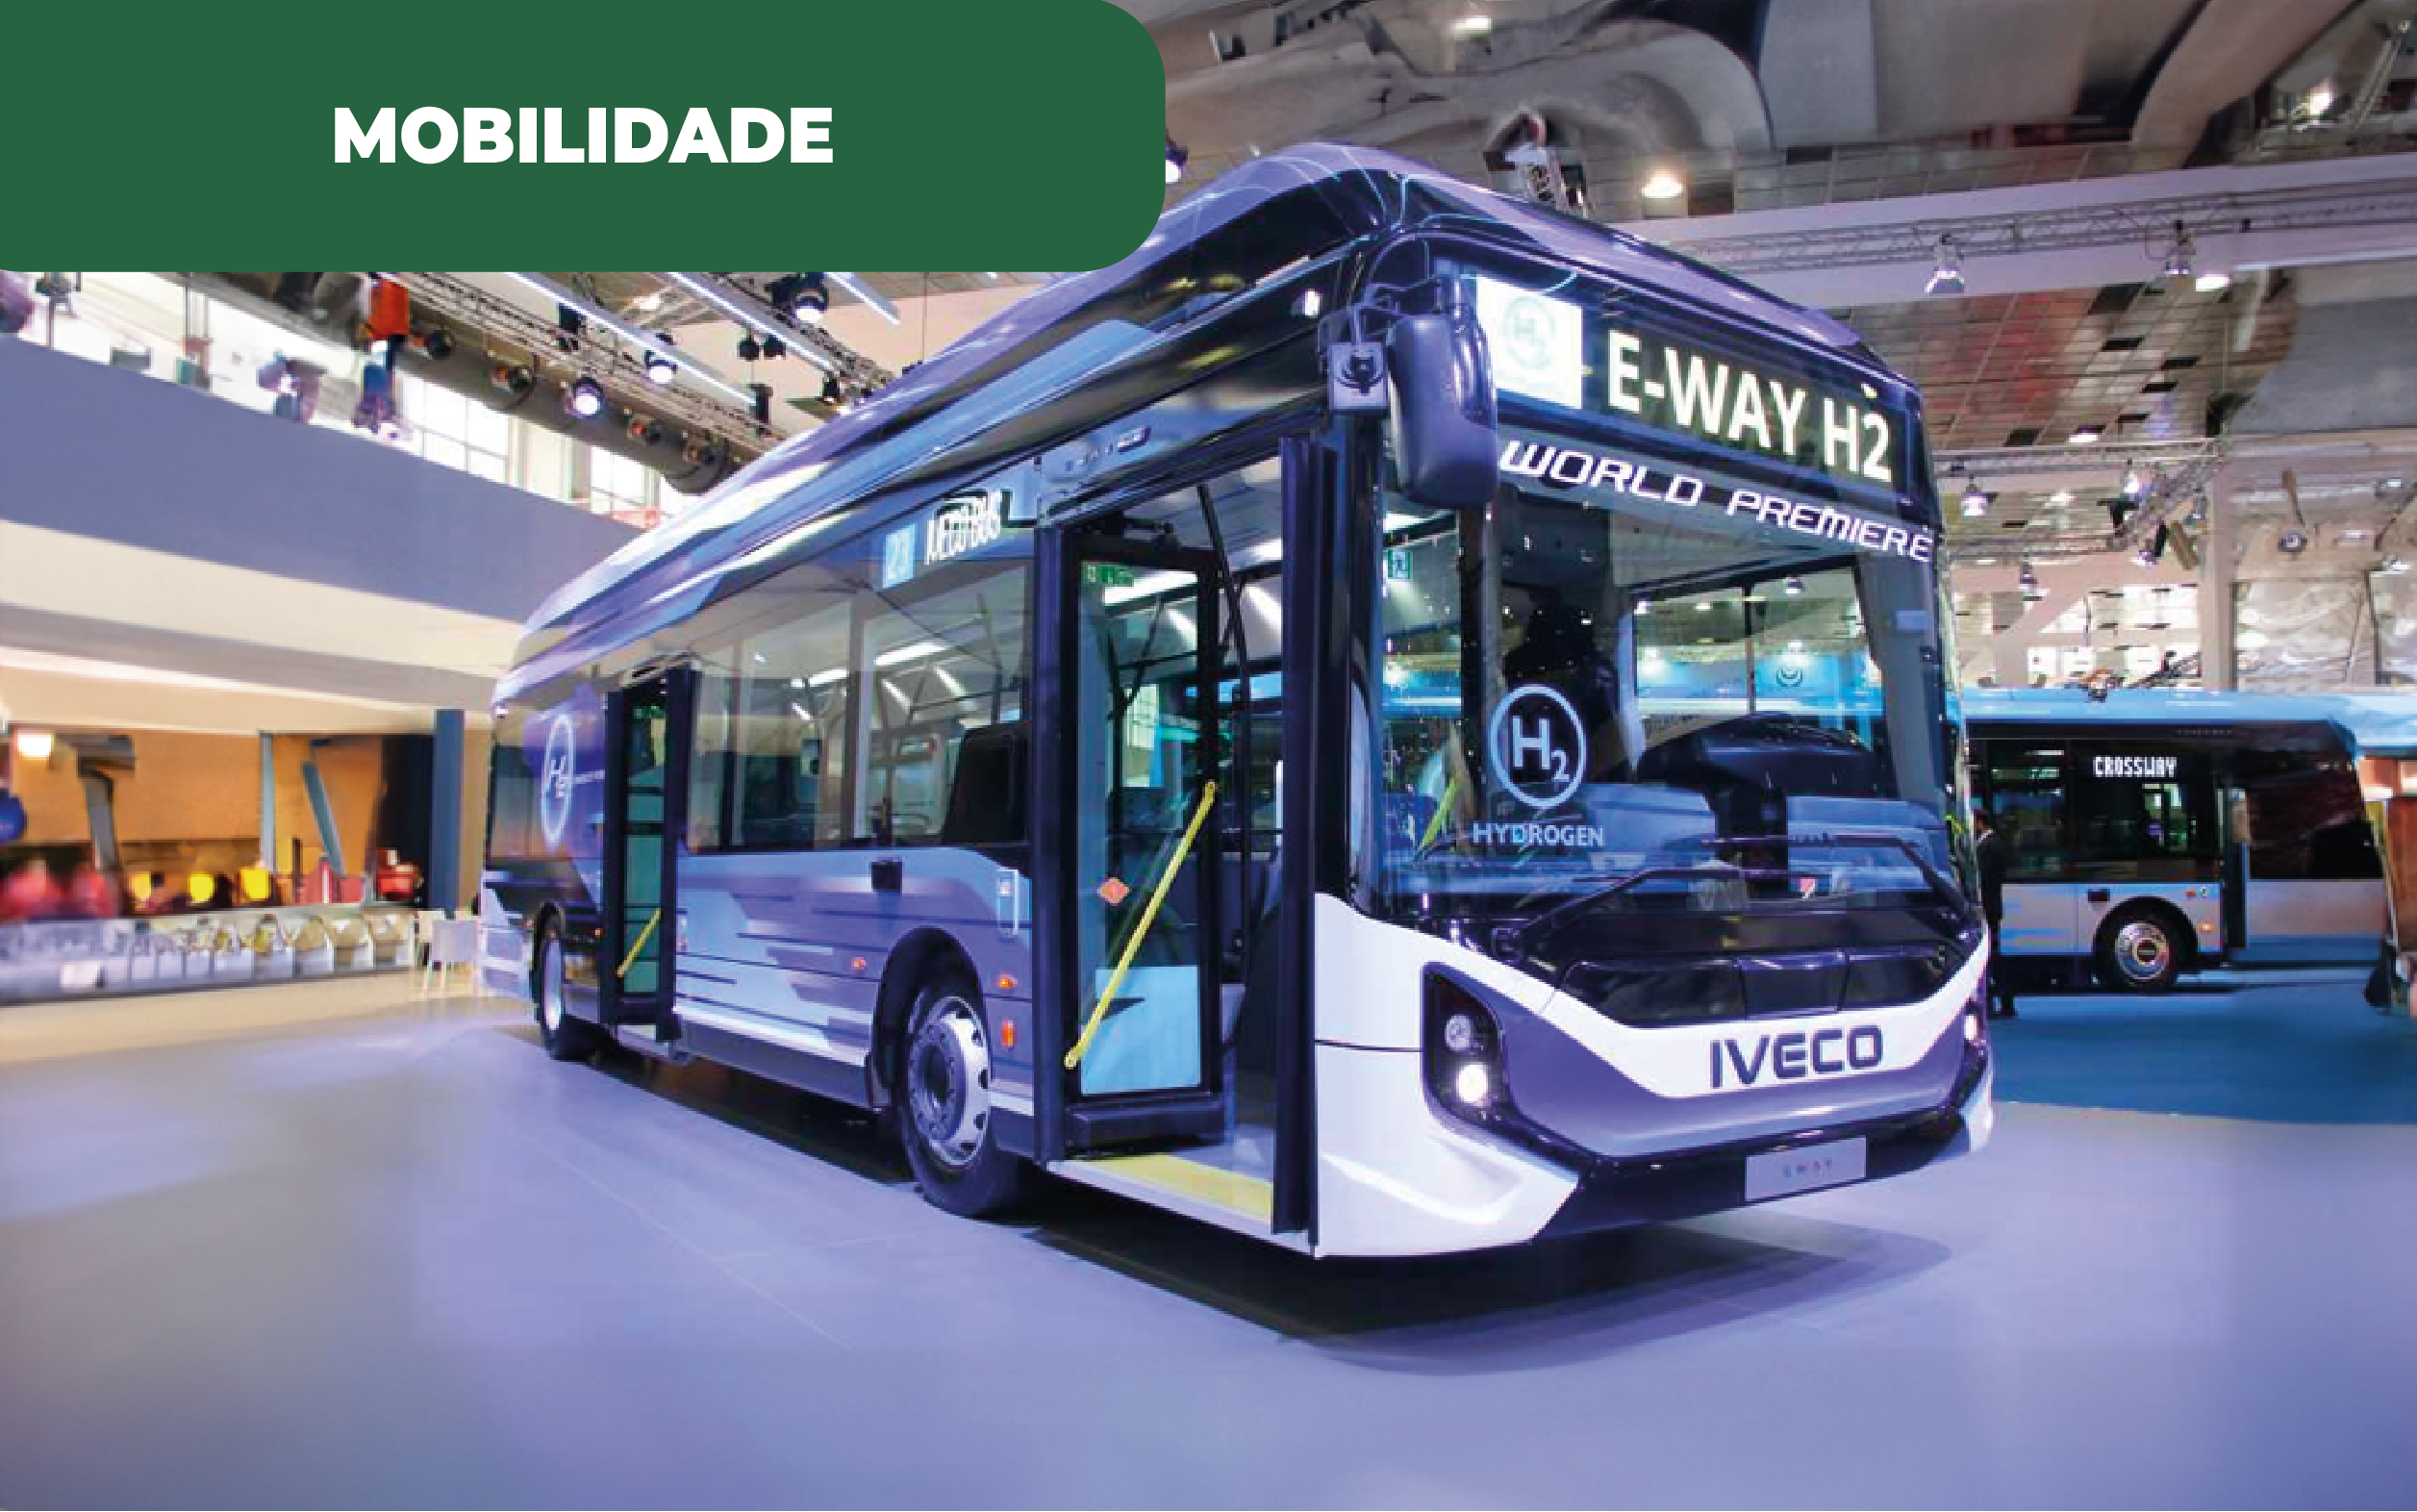 Fotografia colorida do novo autocarro a hidrogénio, concretizado pela Hyundai e Iveco.